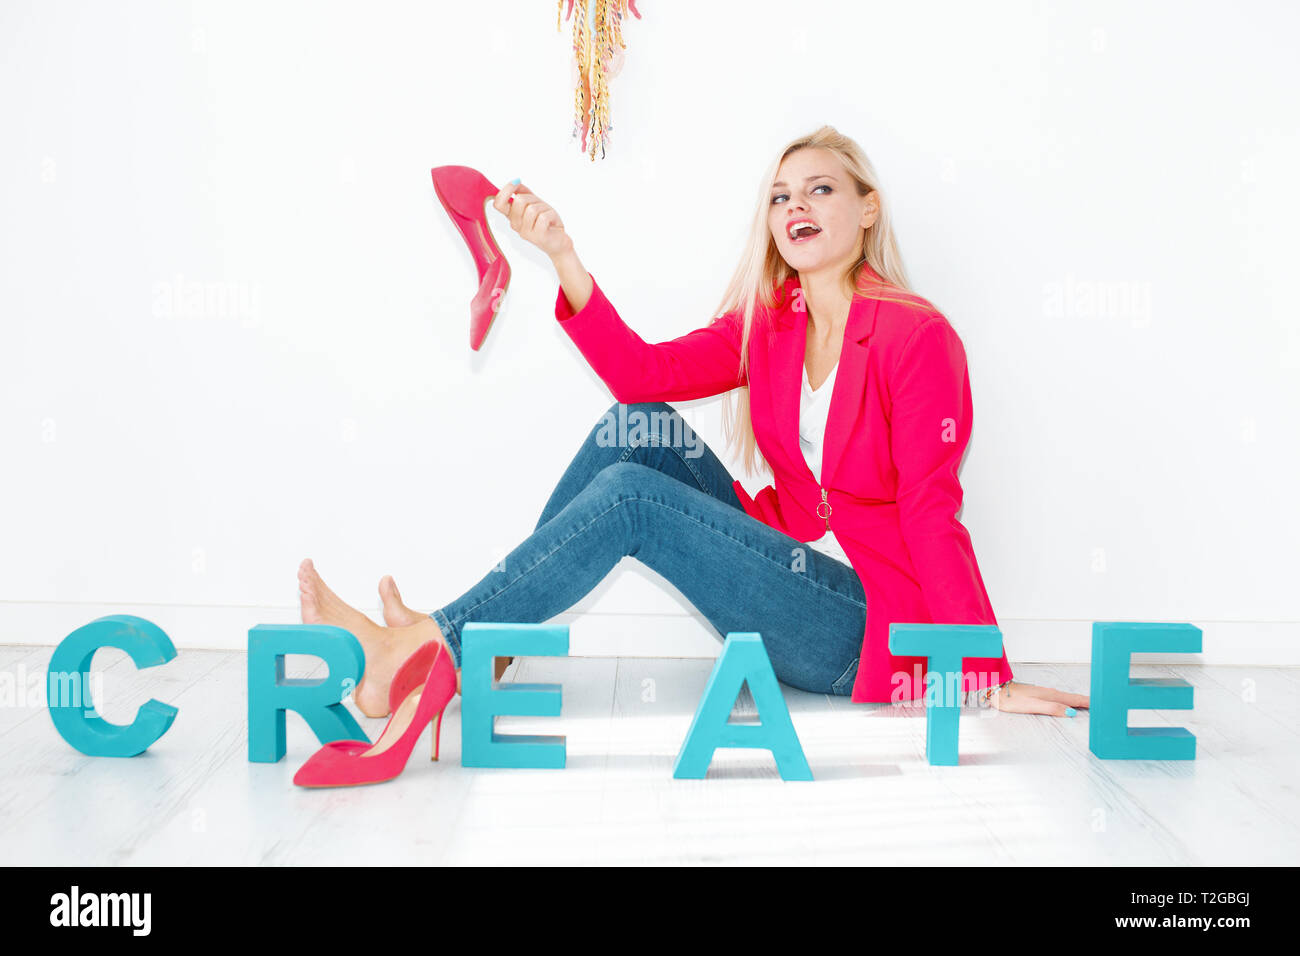 Creative young blonde woman holding High heels à la maison Banque D'Images